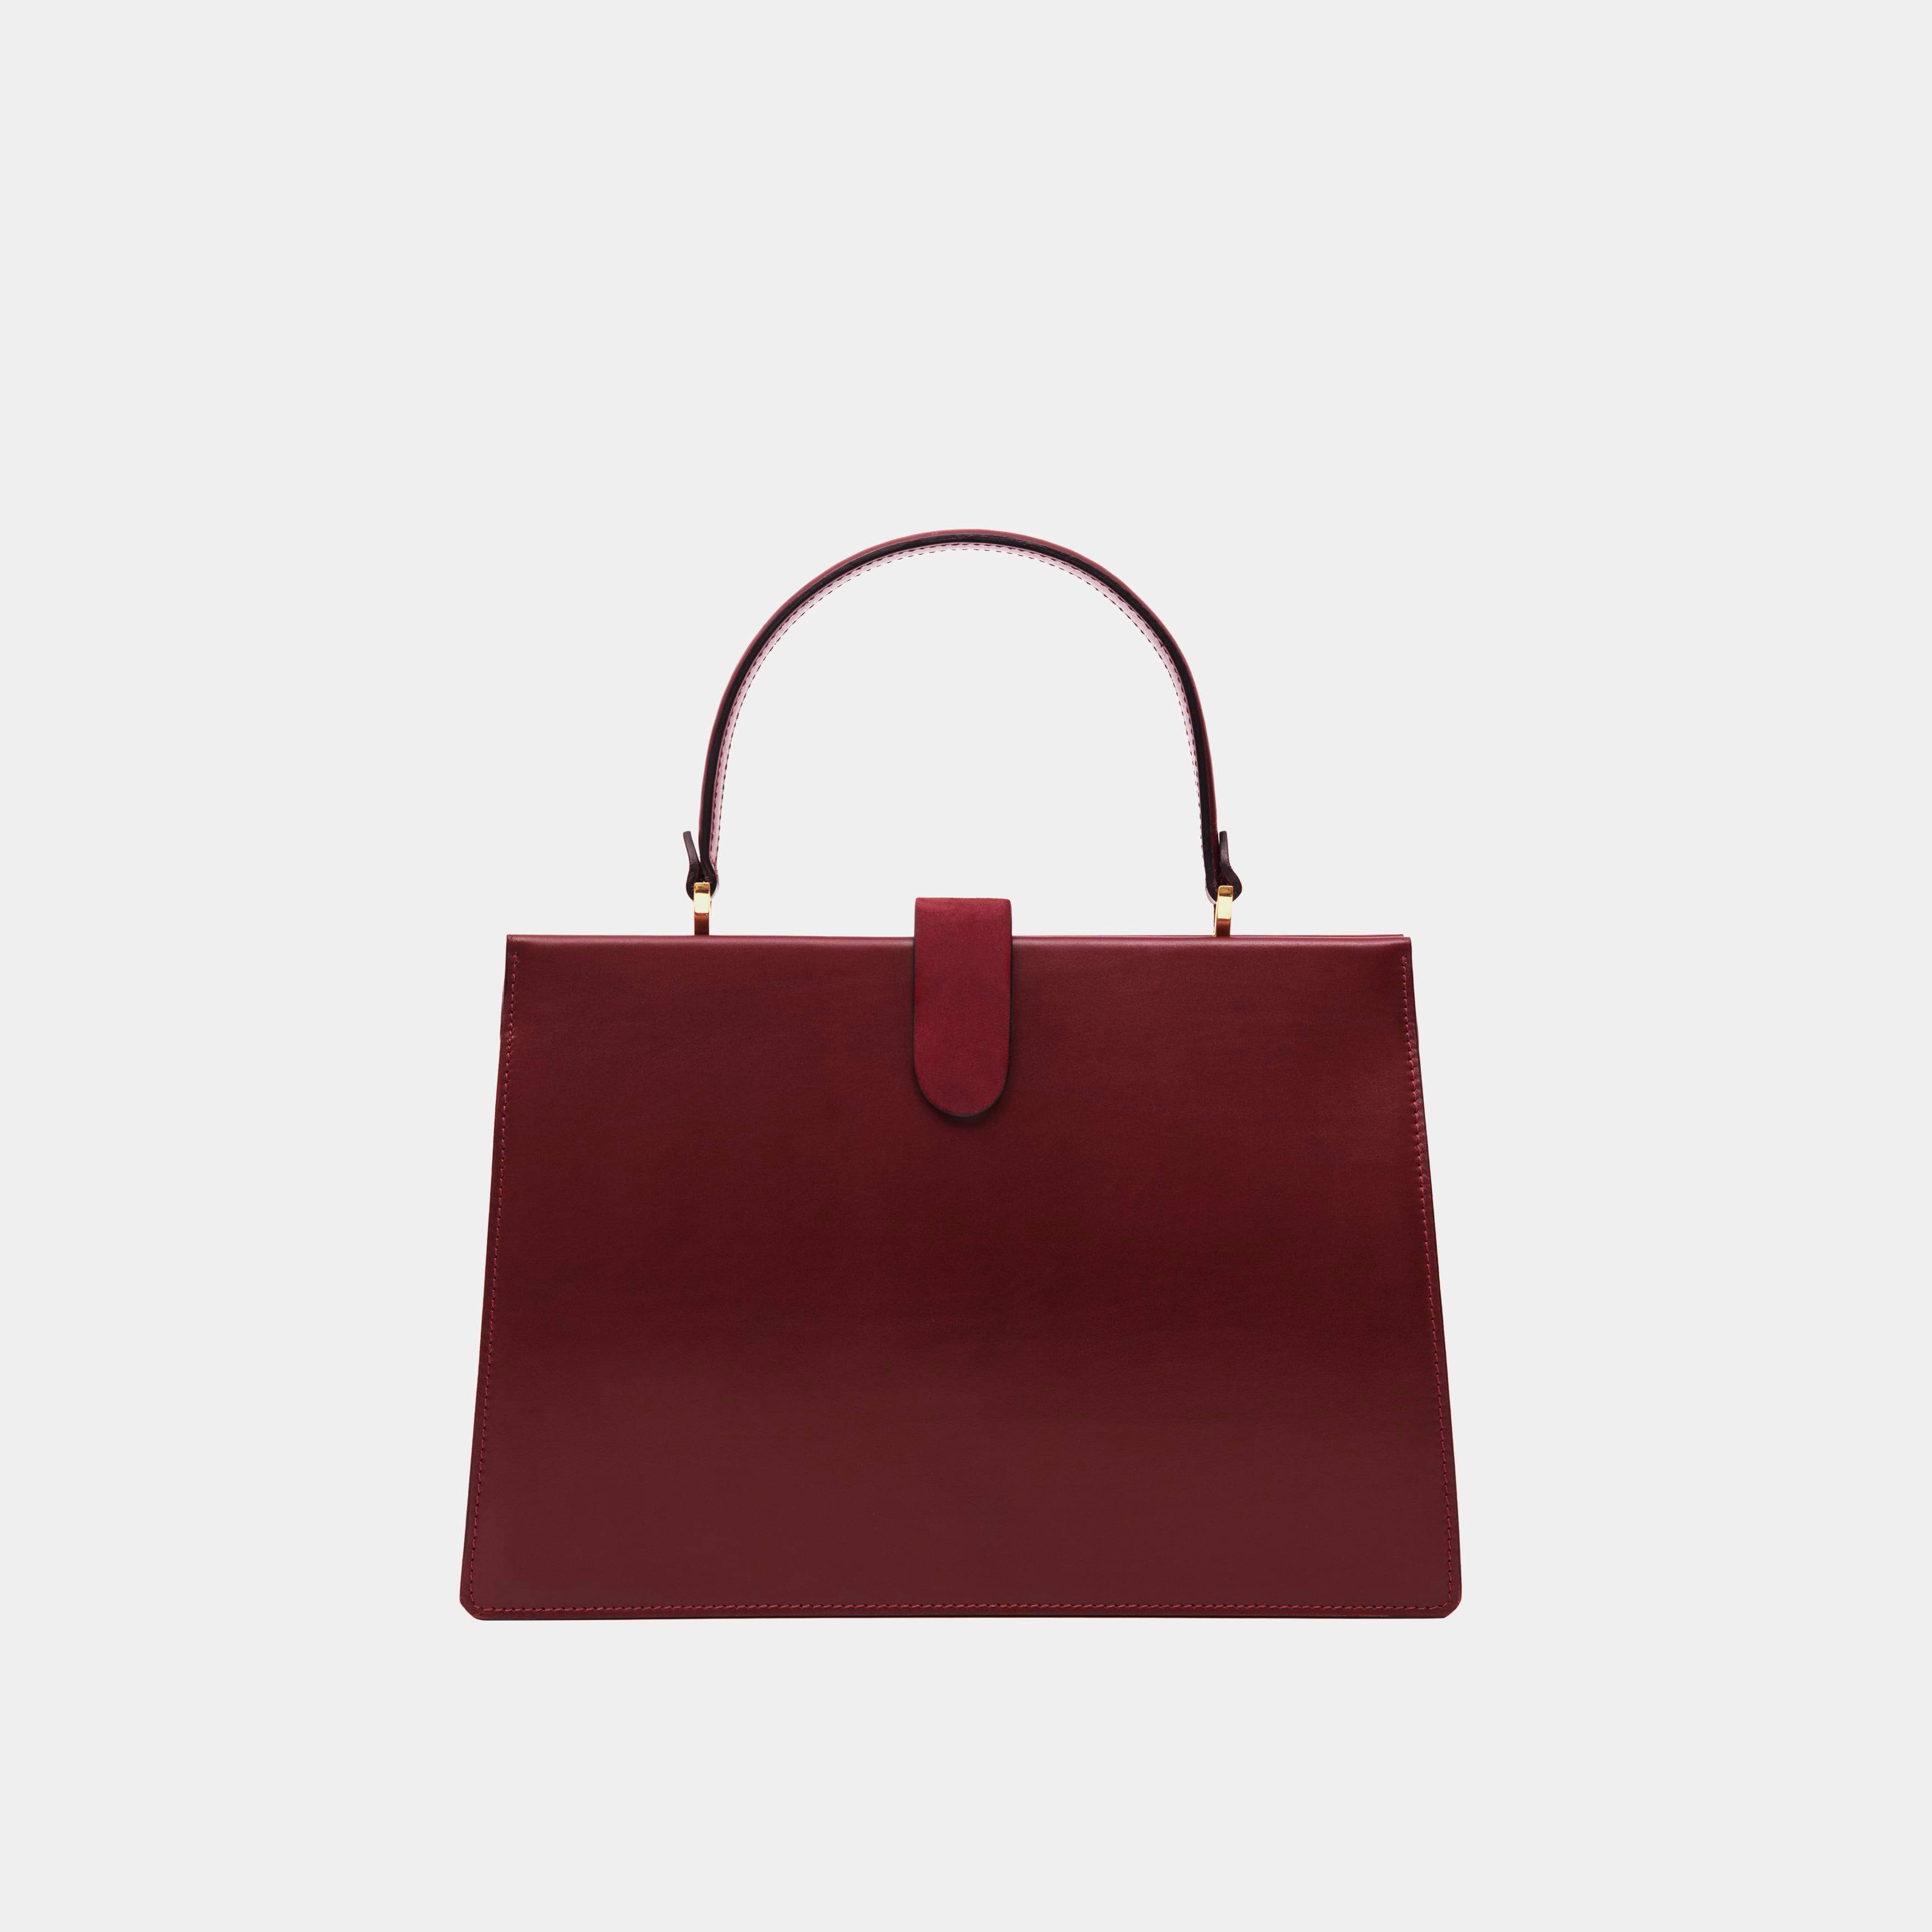 Le sac Elegant - Léo et Violette #burgundy